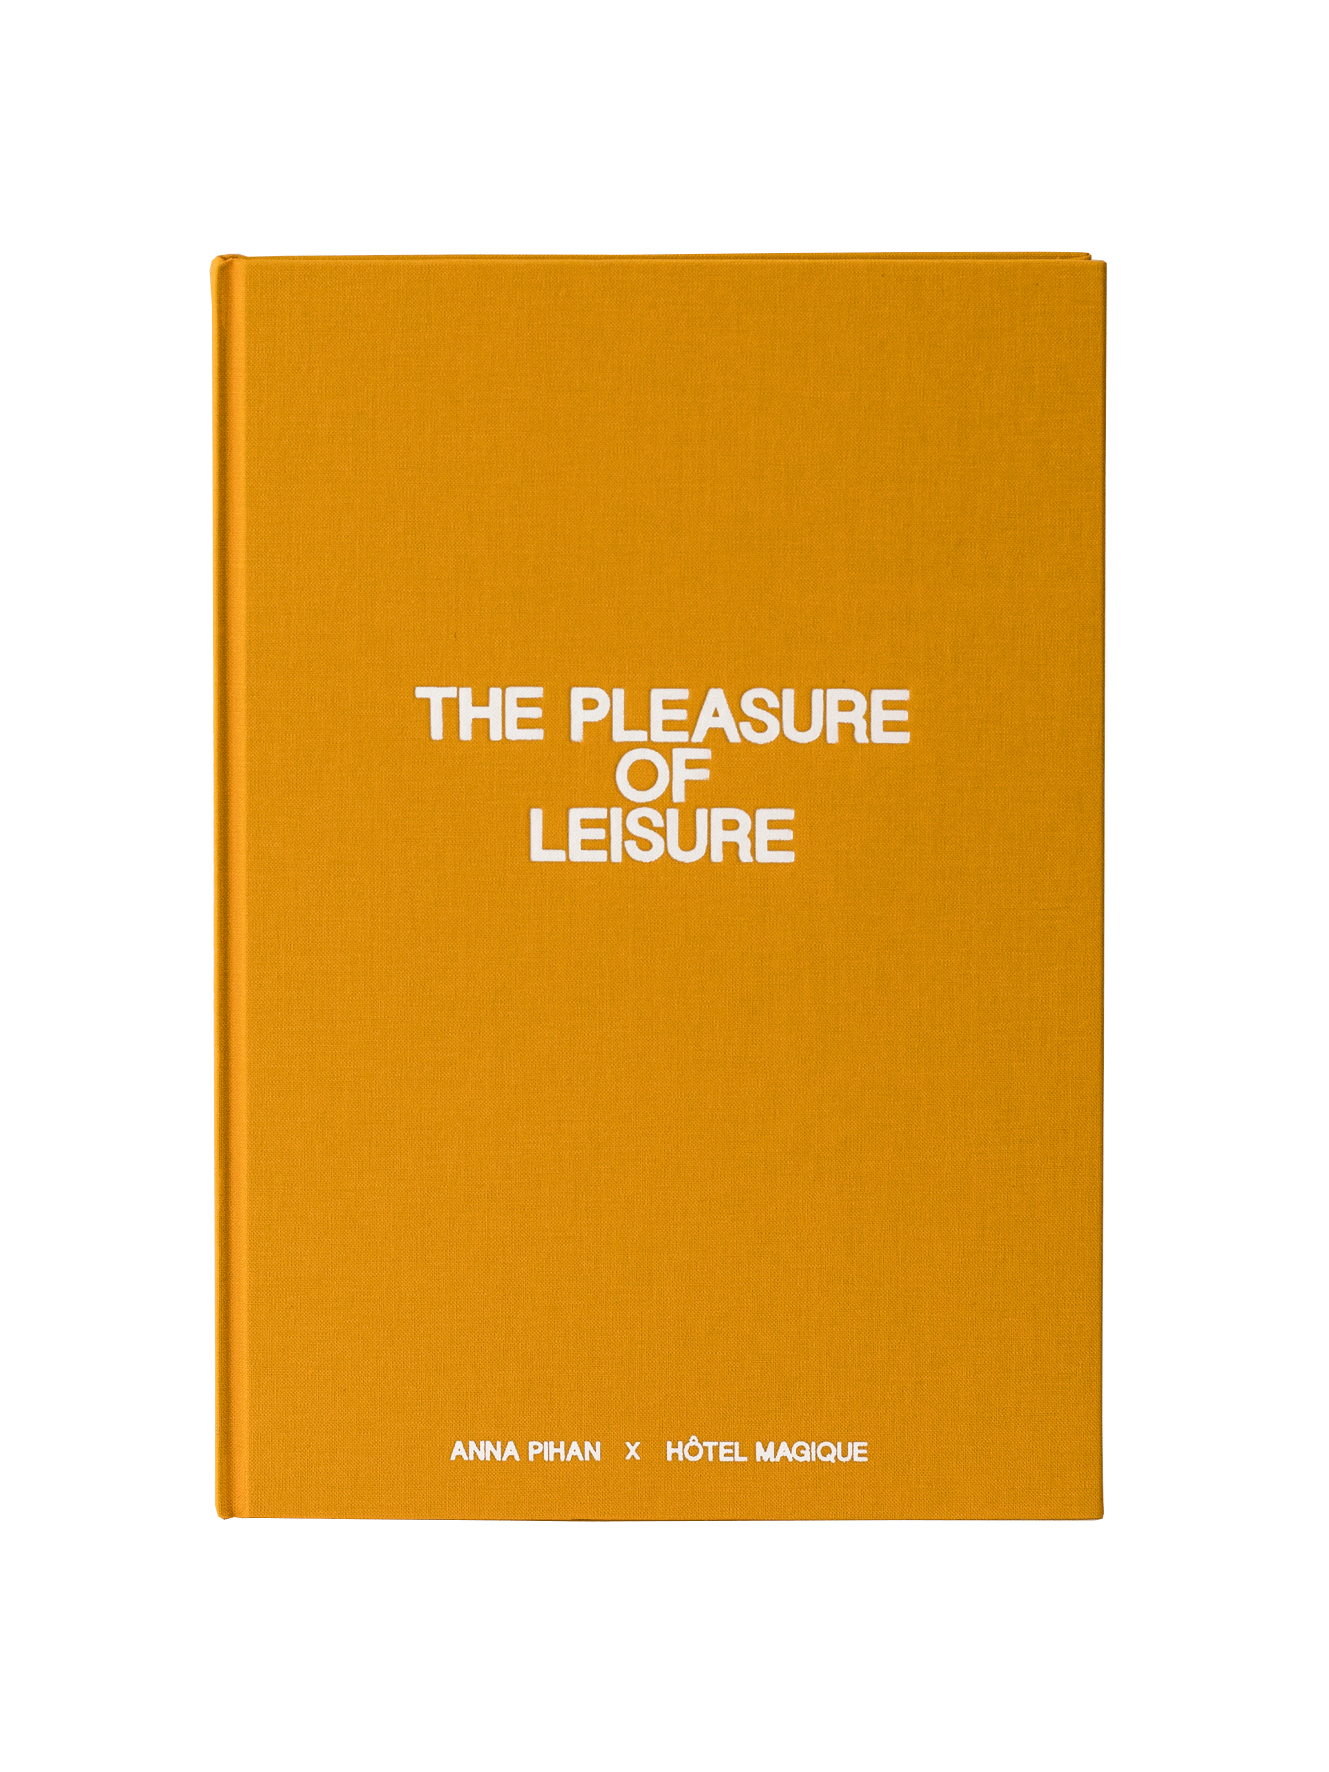 The Pleasure of Leisure - Anna Pihan x Hôtel Magique